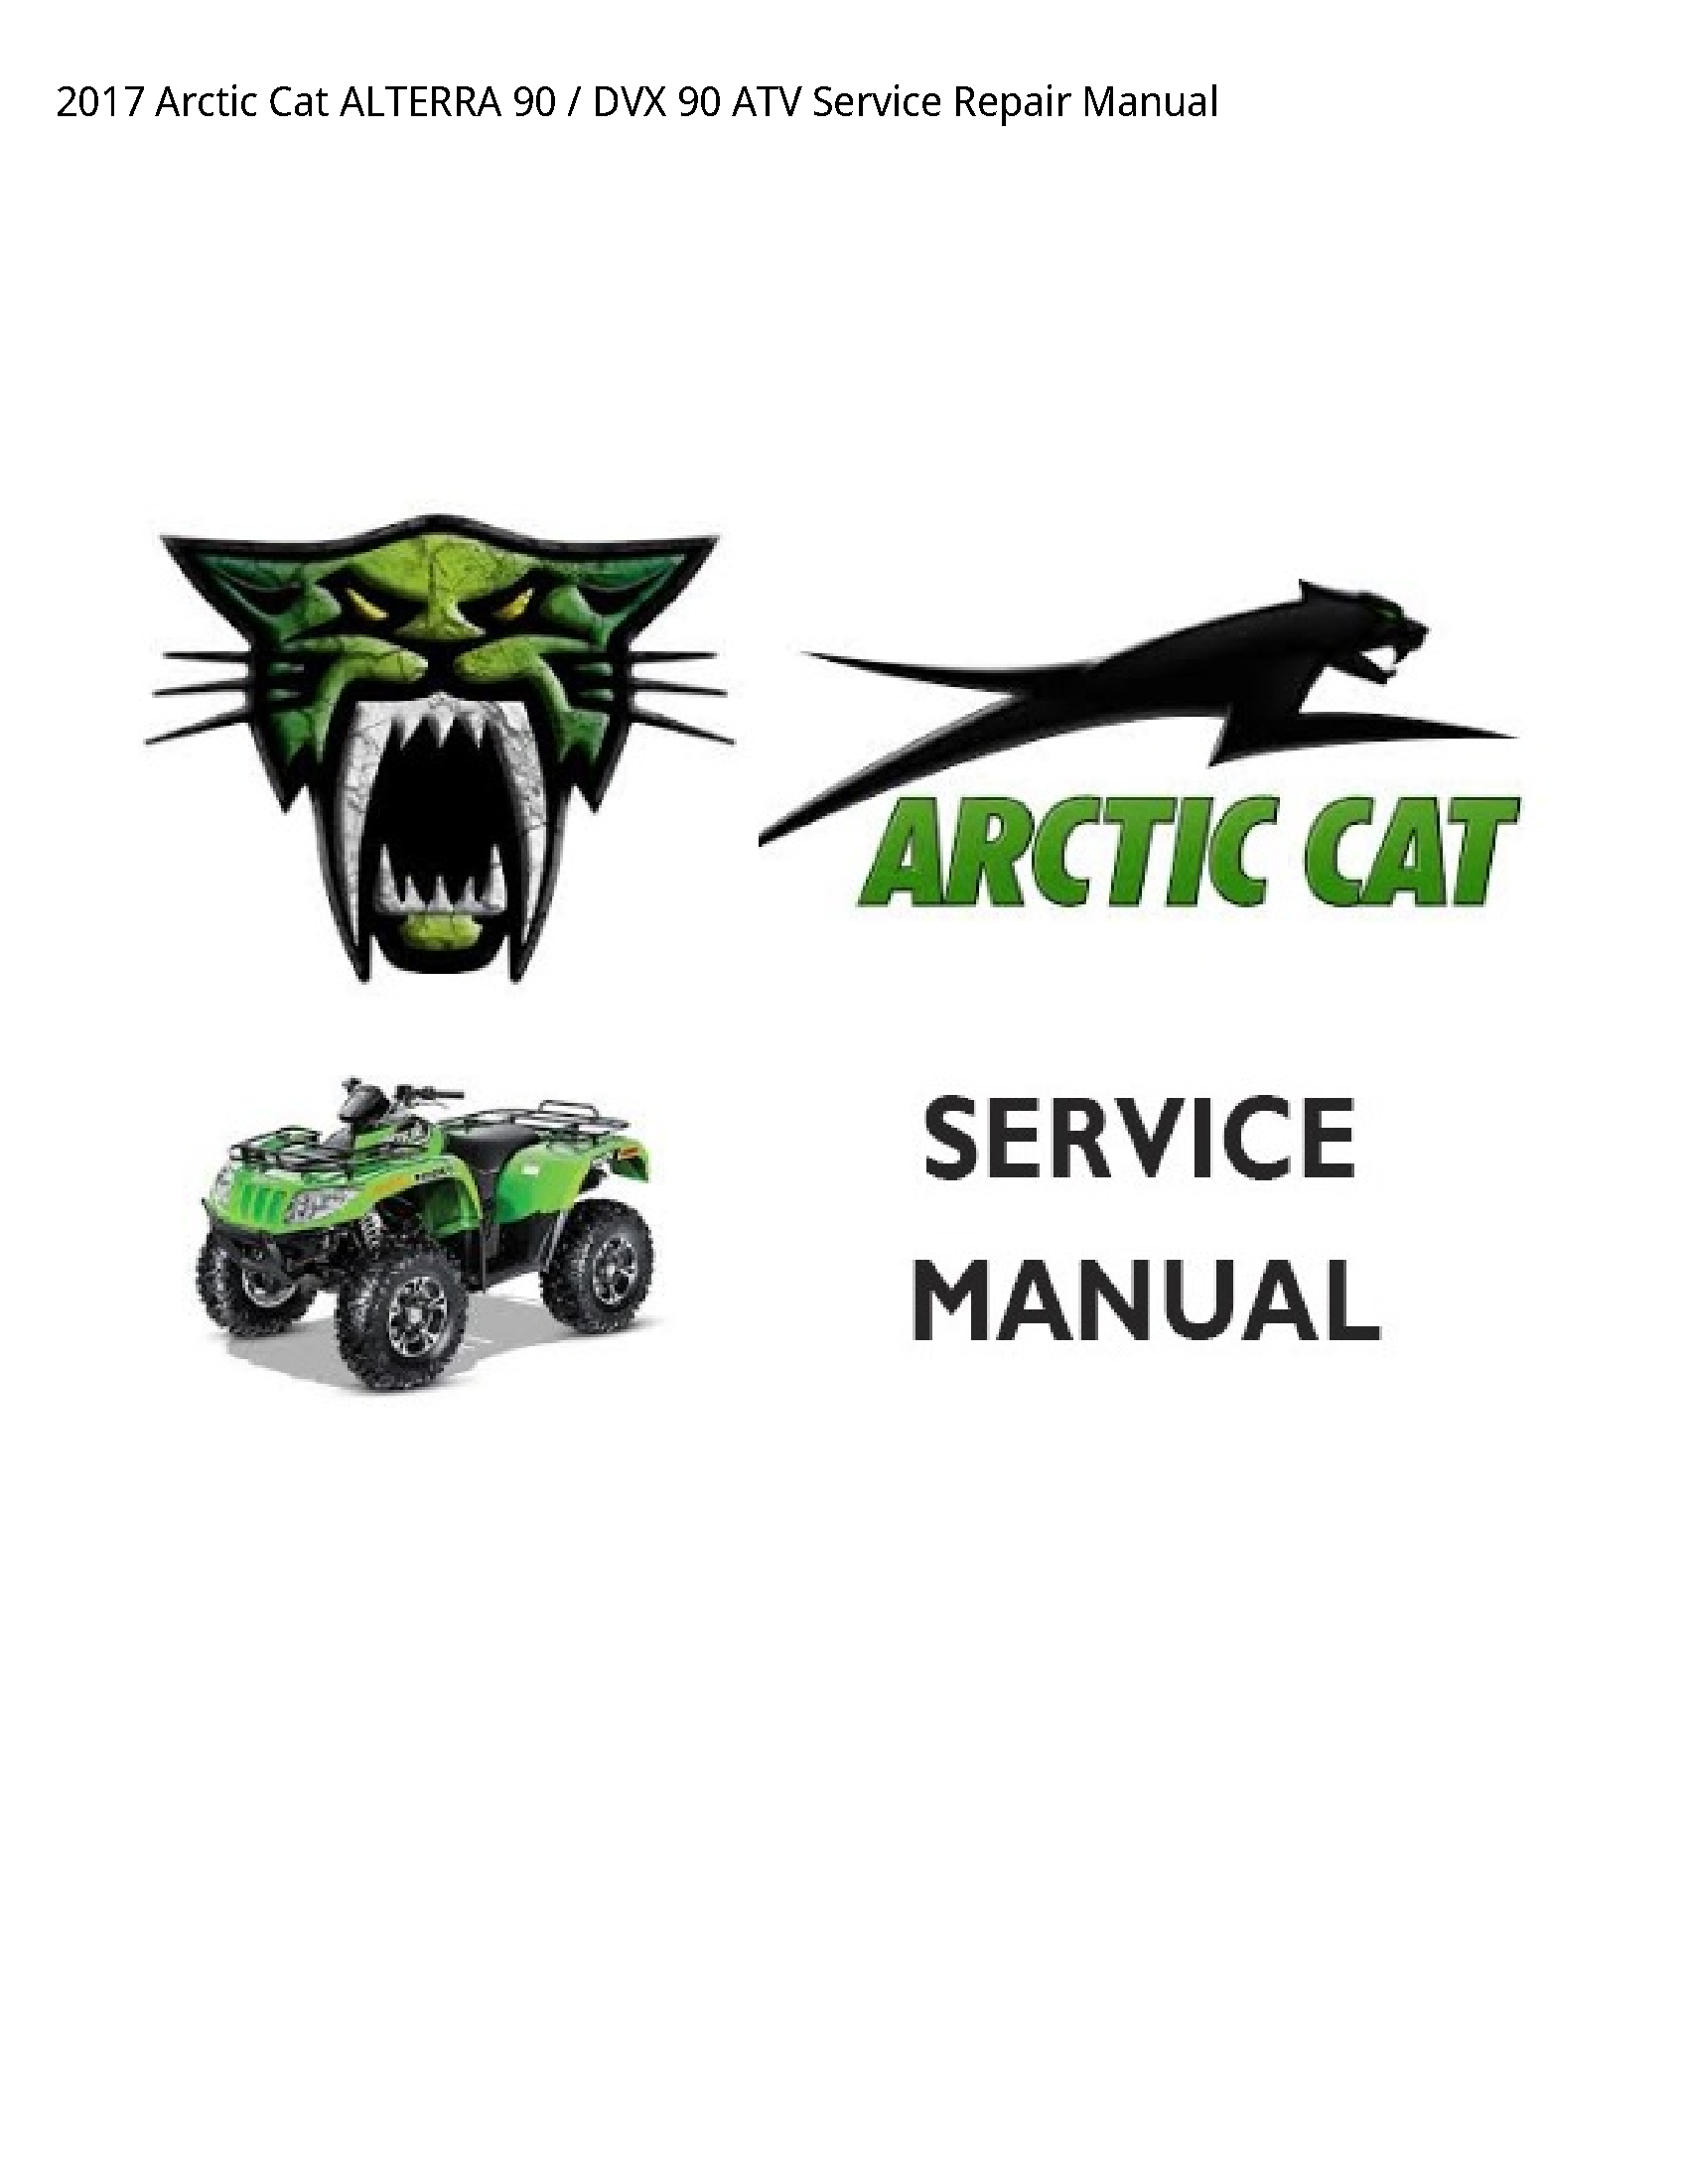 Arctic Cat 90 ALTERRA DVX ATV manual